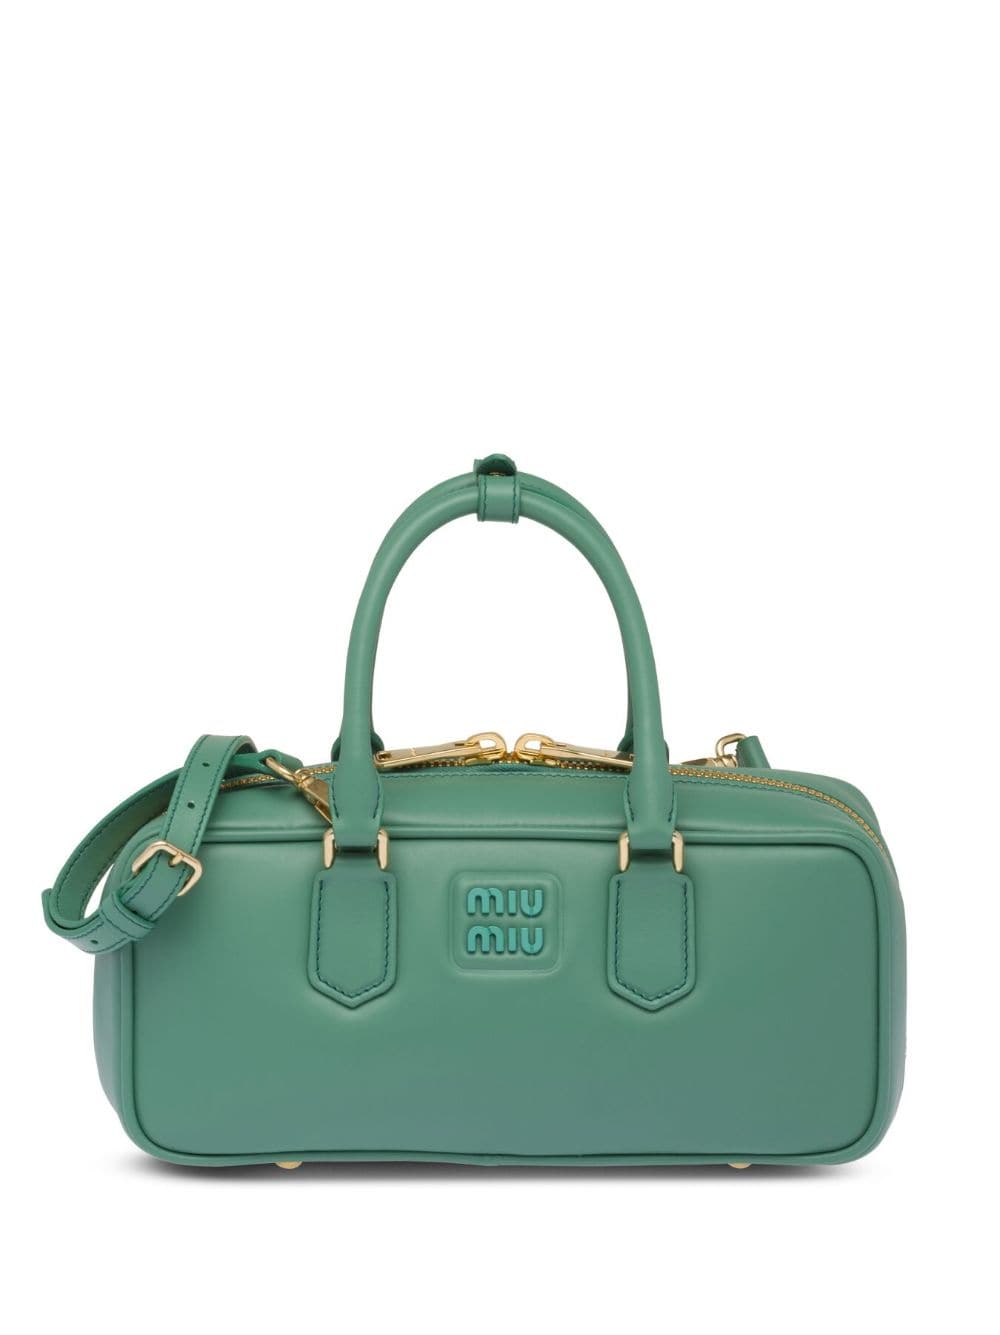 Miu Miu Leather Mini Top-handle Bag In Green